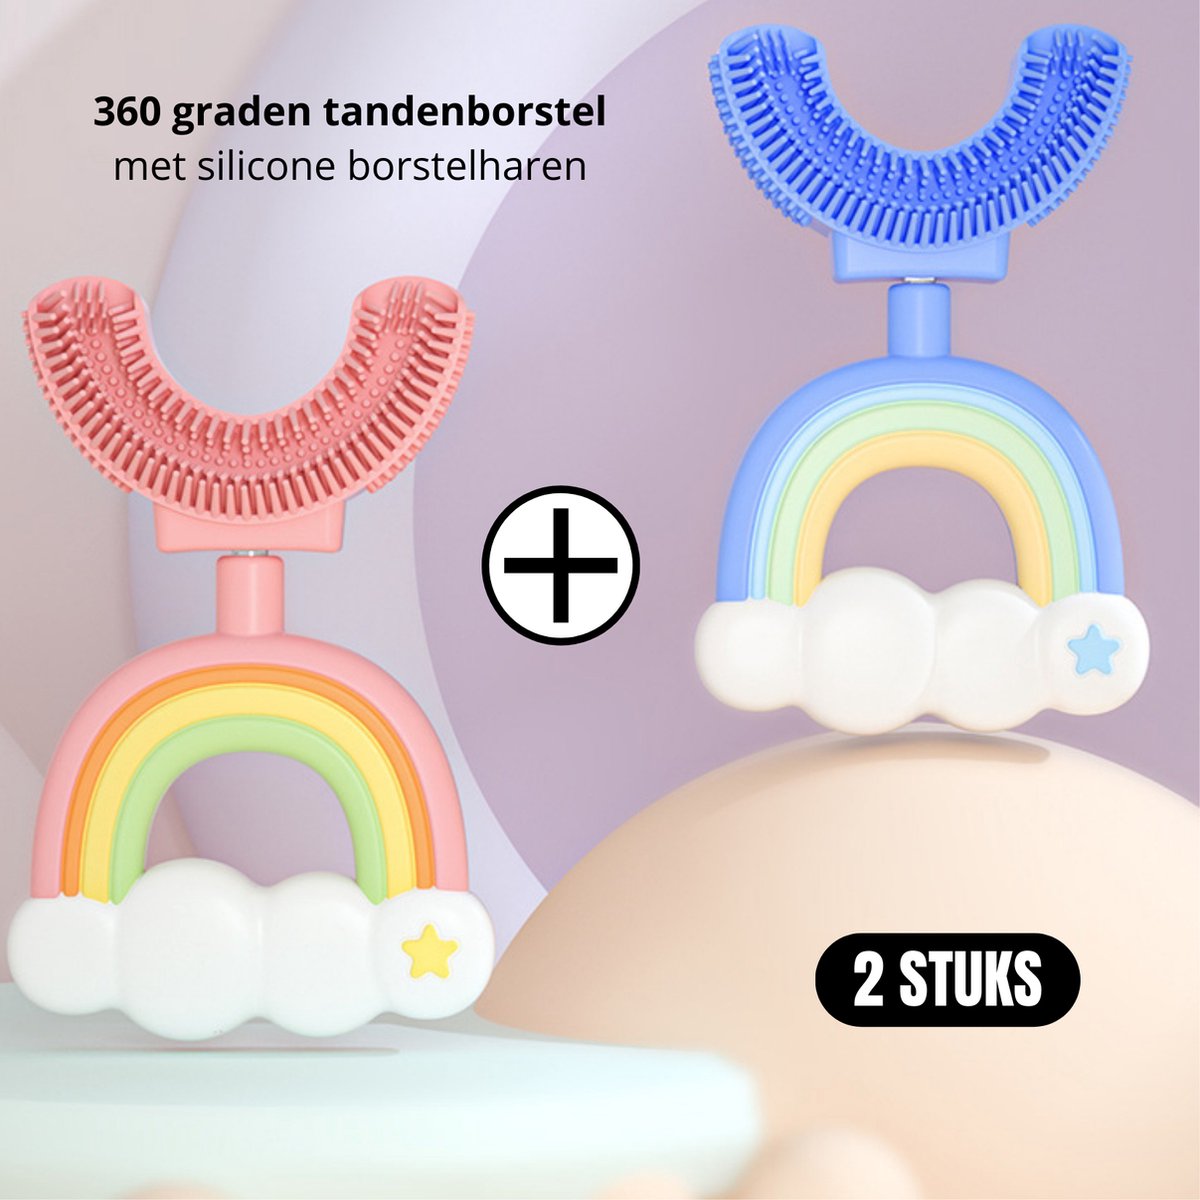 2 Stuks - 360 graden U vormige baby tandenborstel - Blauw Regenboog + Roze Regenboog - 2 in 1 Tandenborstel - Bijtring / Teether - Zachte siliconen - Kinderen tandenborstel - Jongen/Meisje